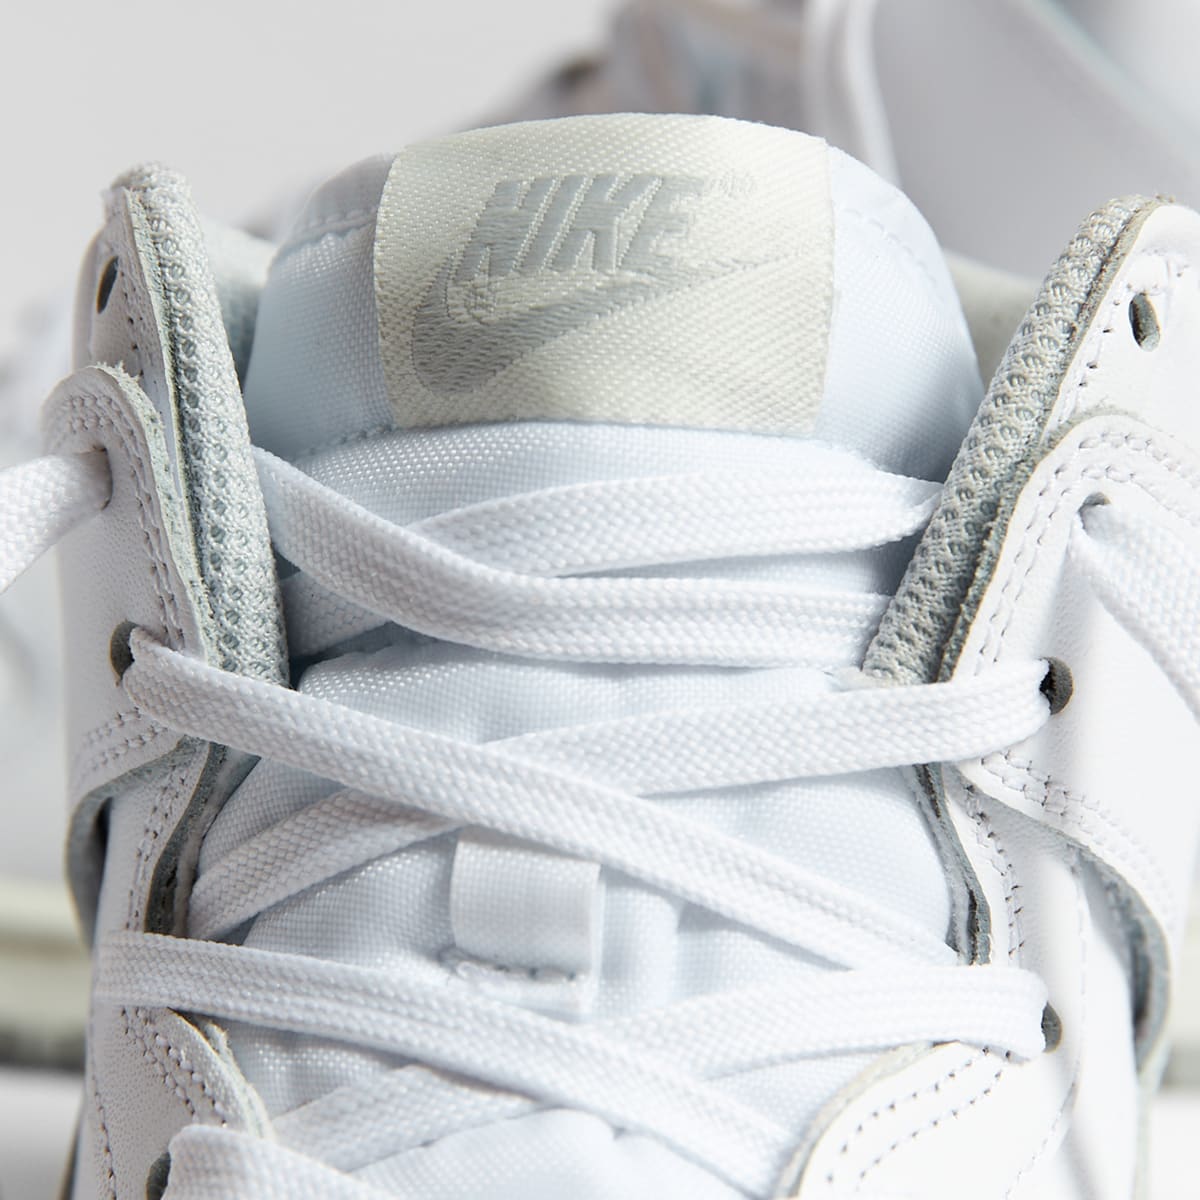 Nike Dunk High W (White, Grey Fog & Sail) | END. Launches